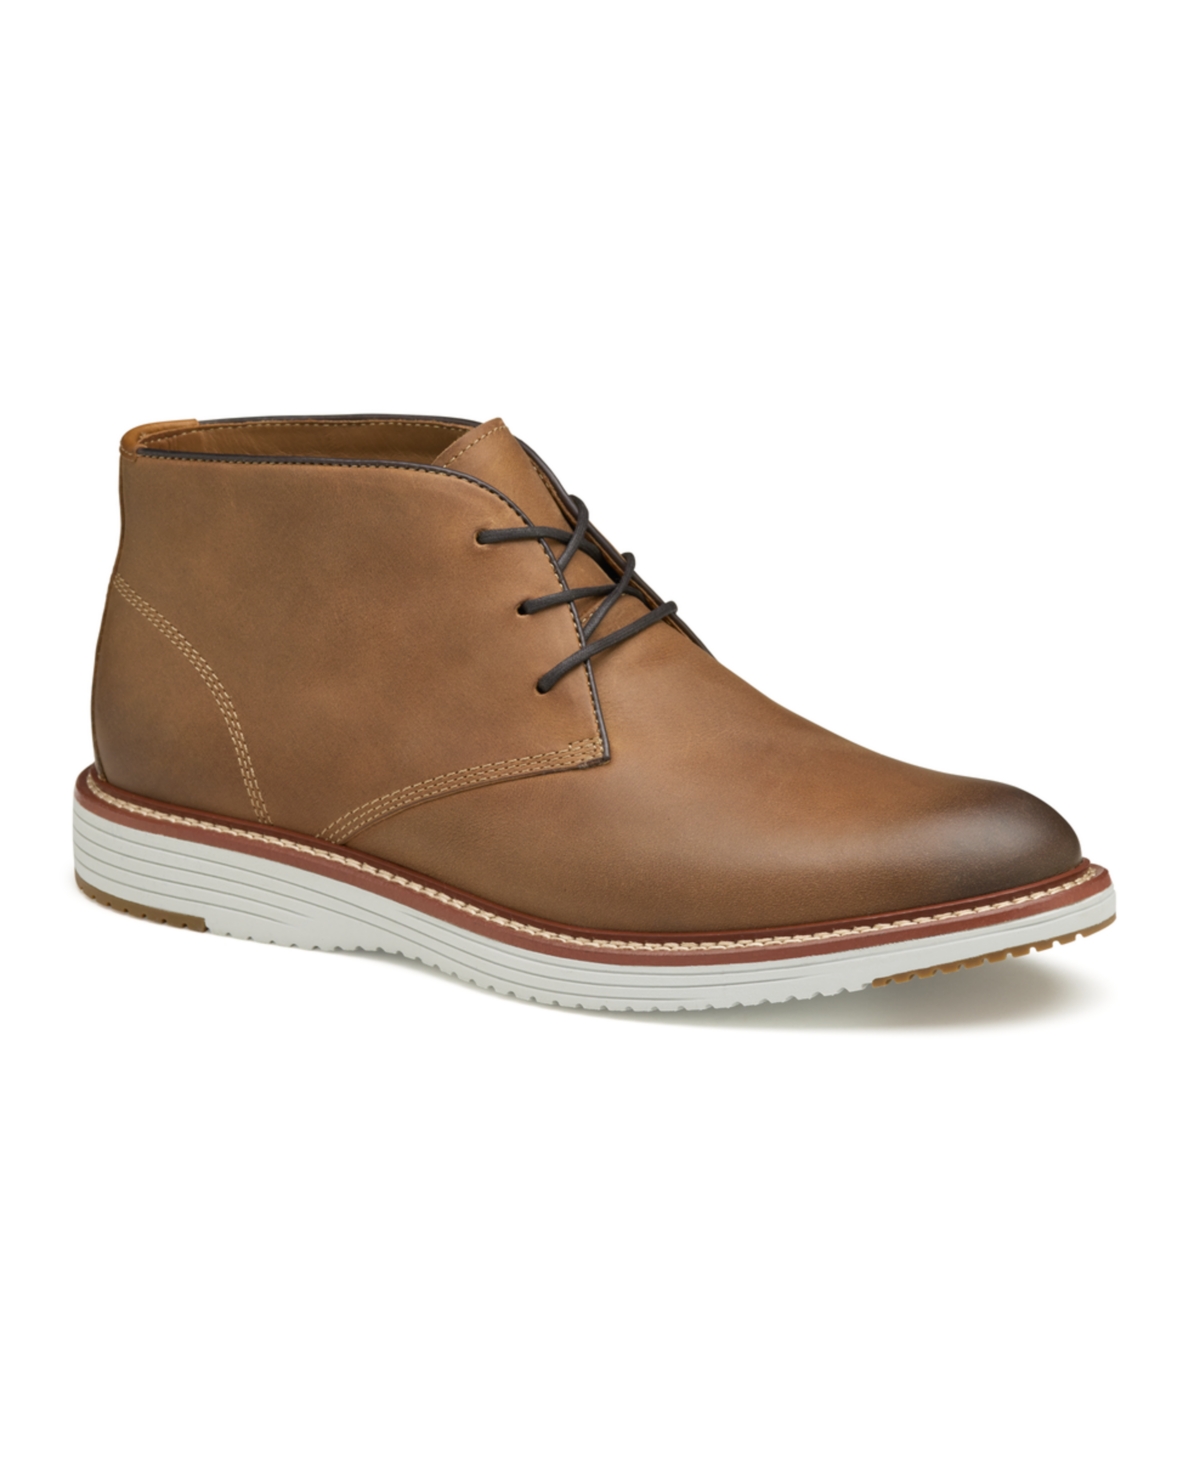 Men's Upton Chukka Boots - Tan Full Grain Leather